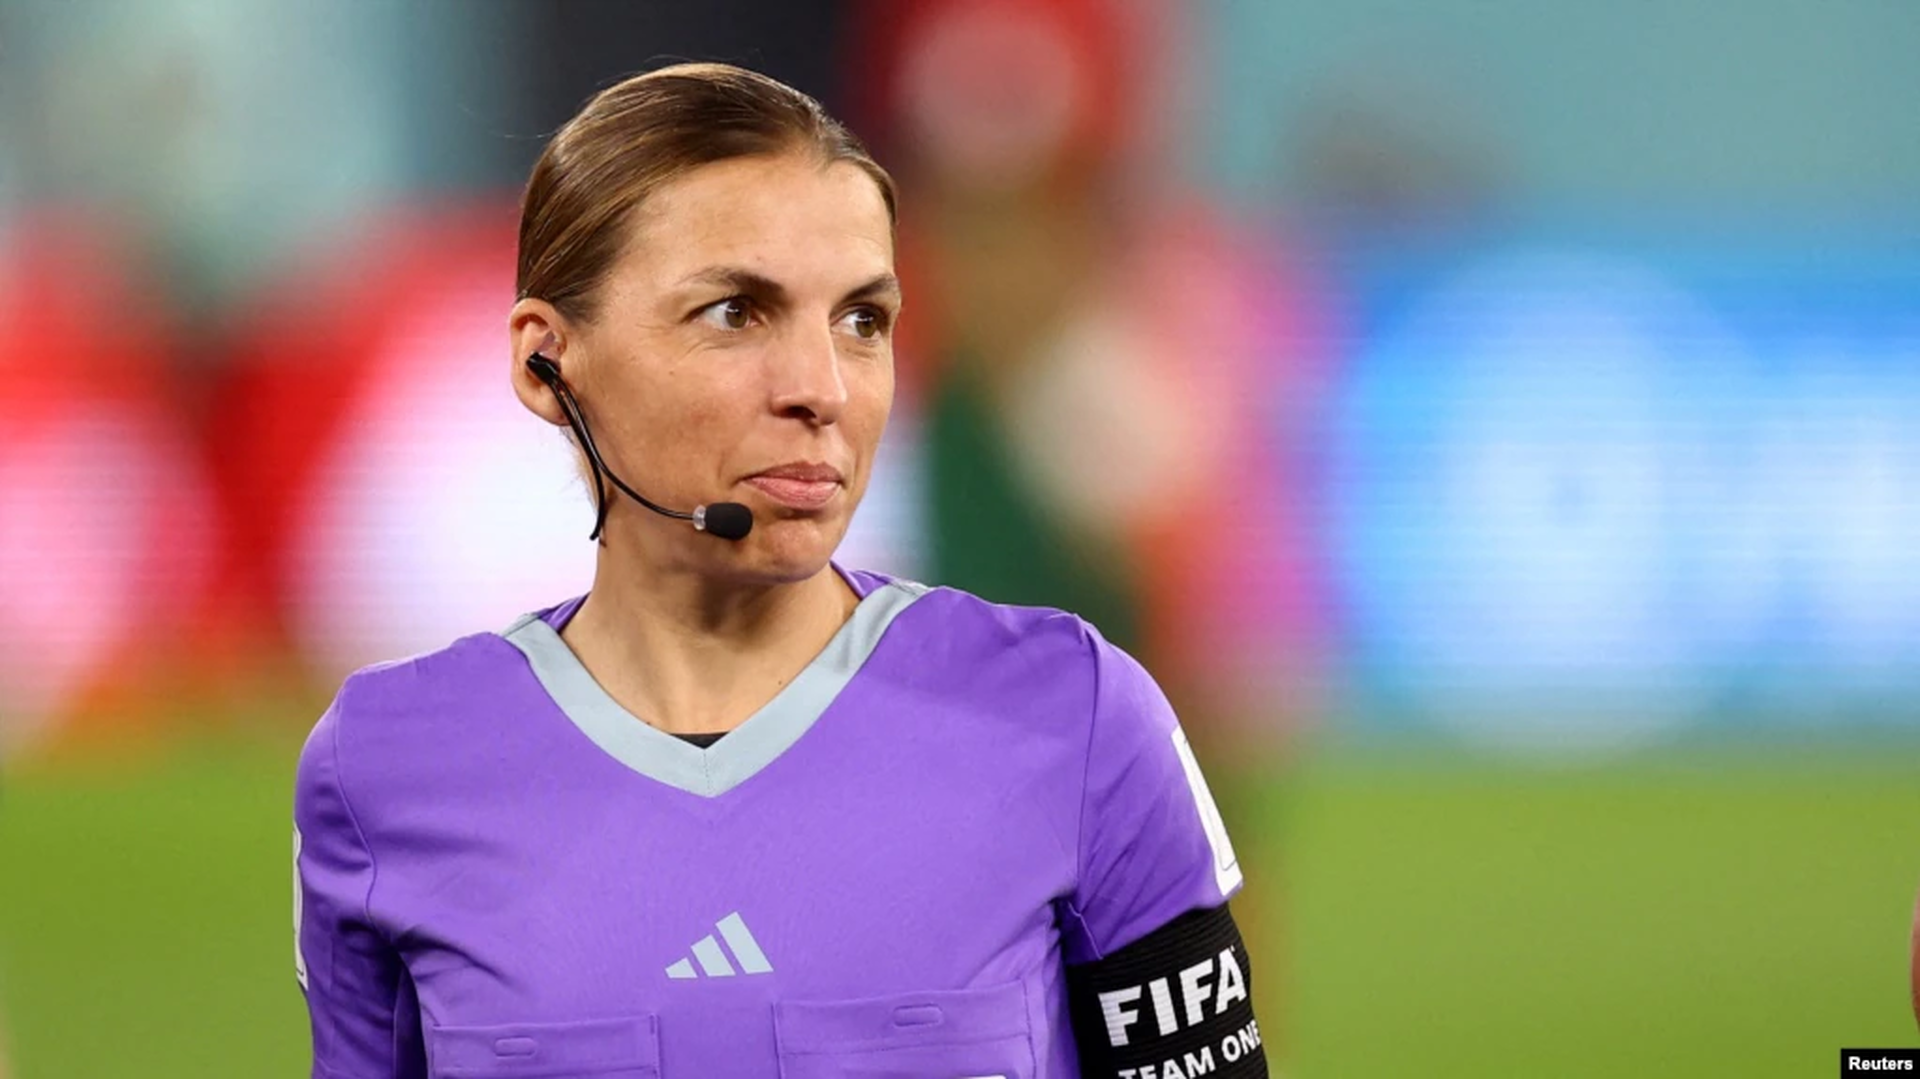 La árbitro Stephanie Frappart dirigirá el Costa Rica-Alemania, por celebrarse el jueves 1 de diciembre en Qatar.